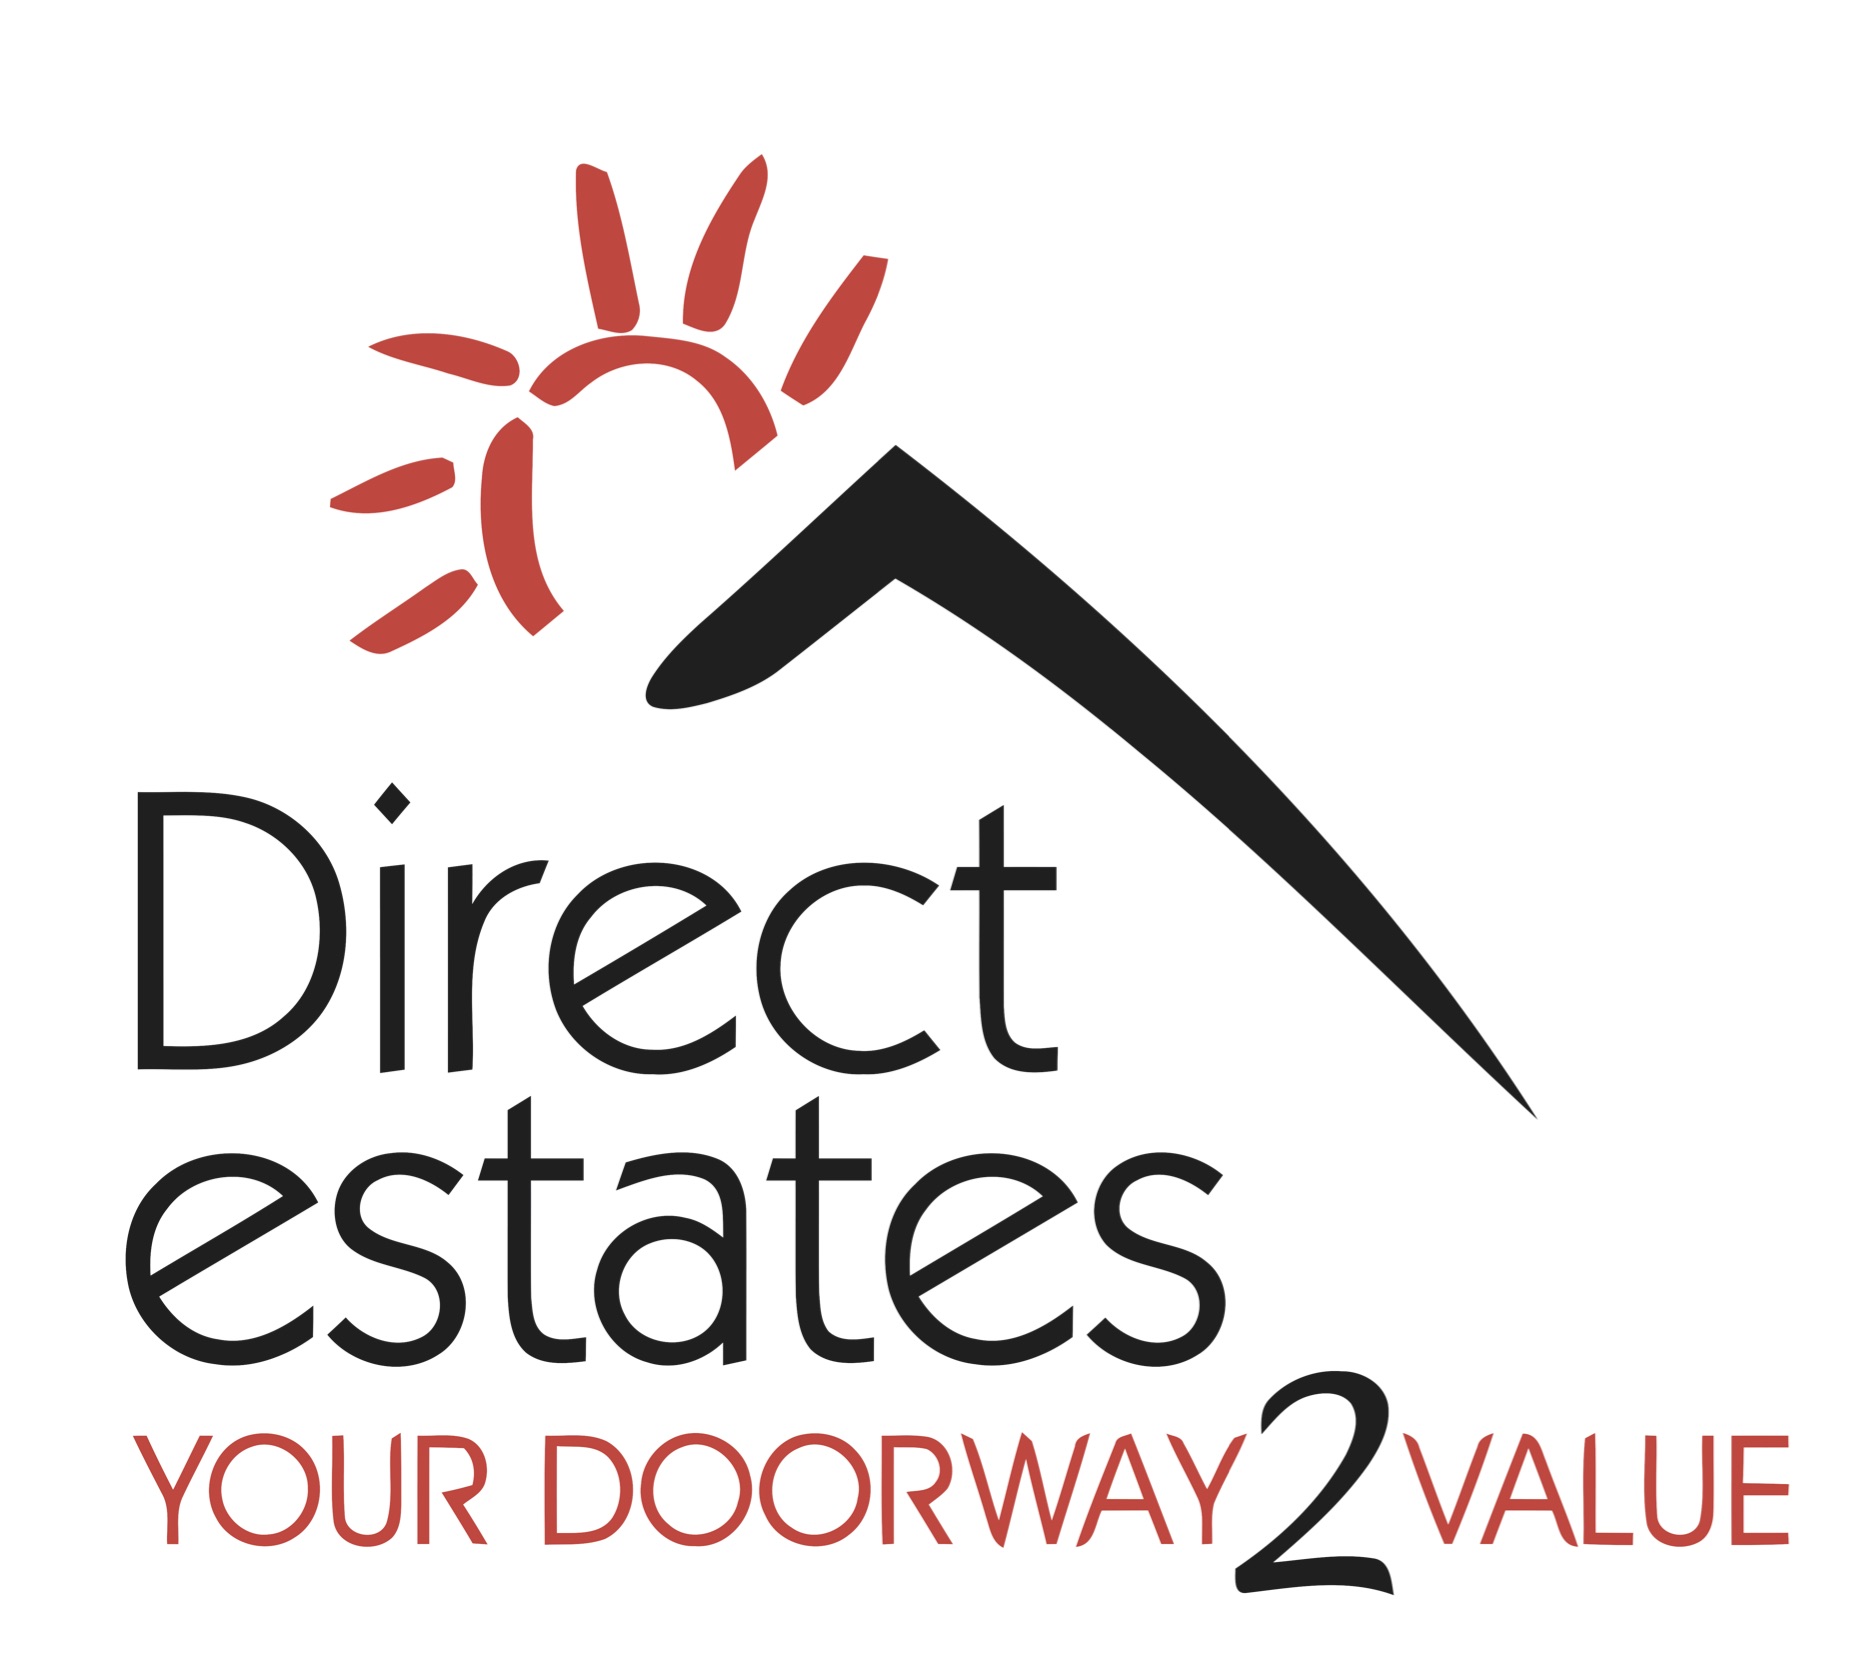 Direct Estates